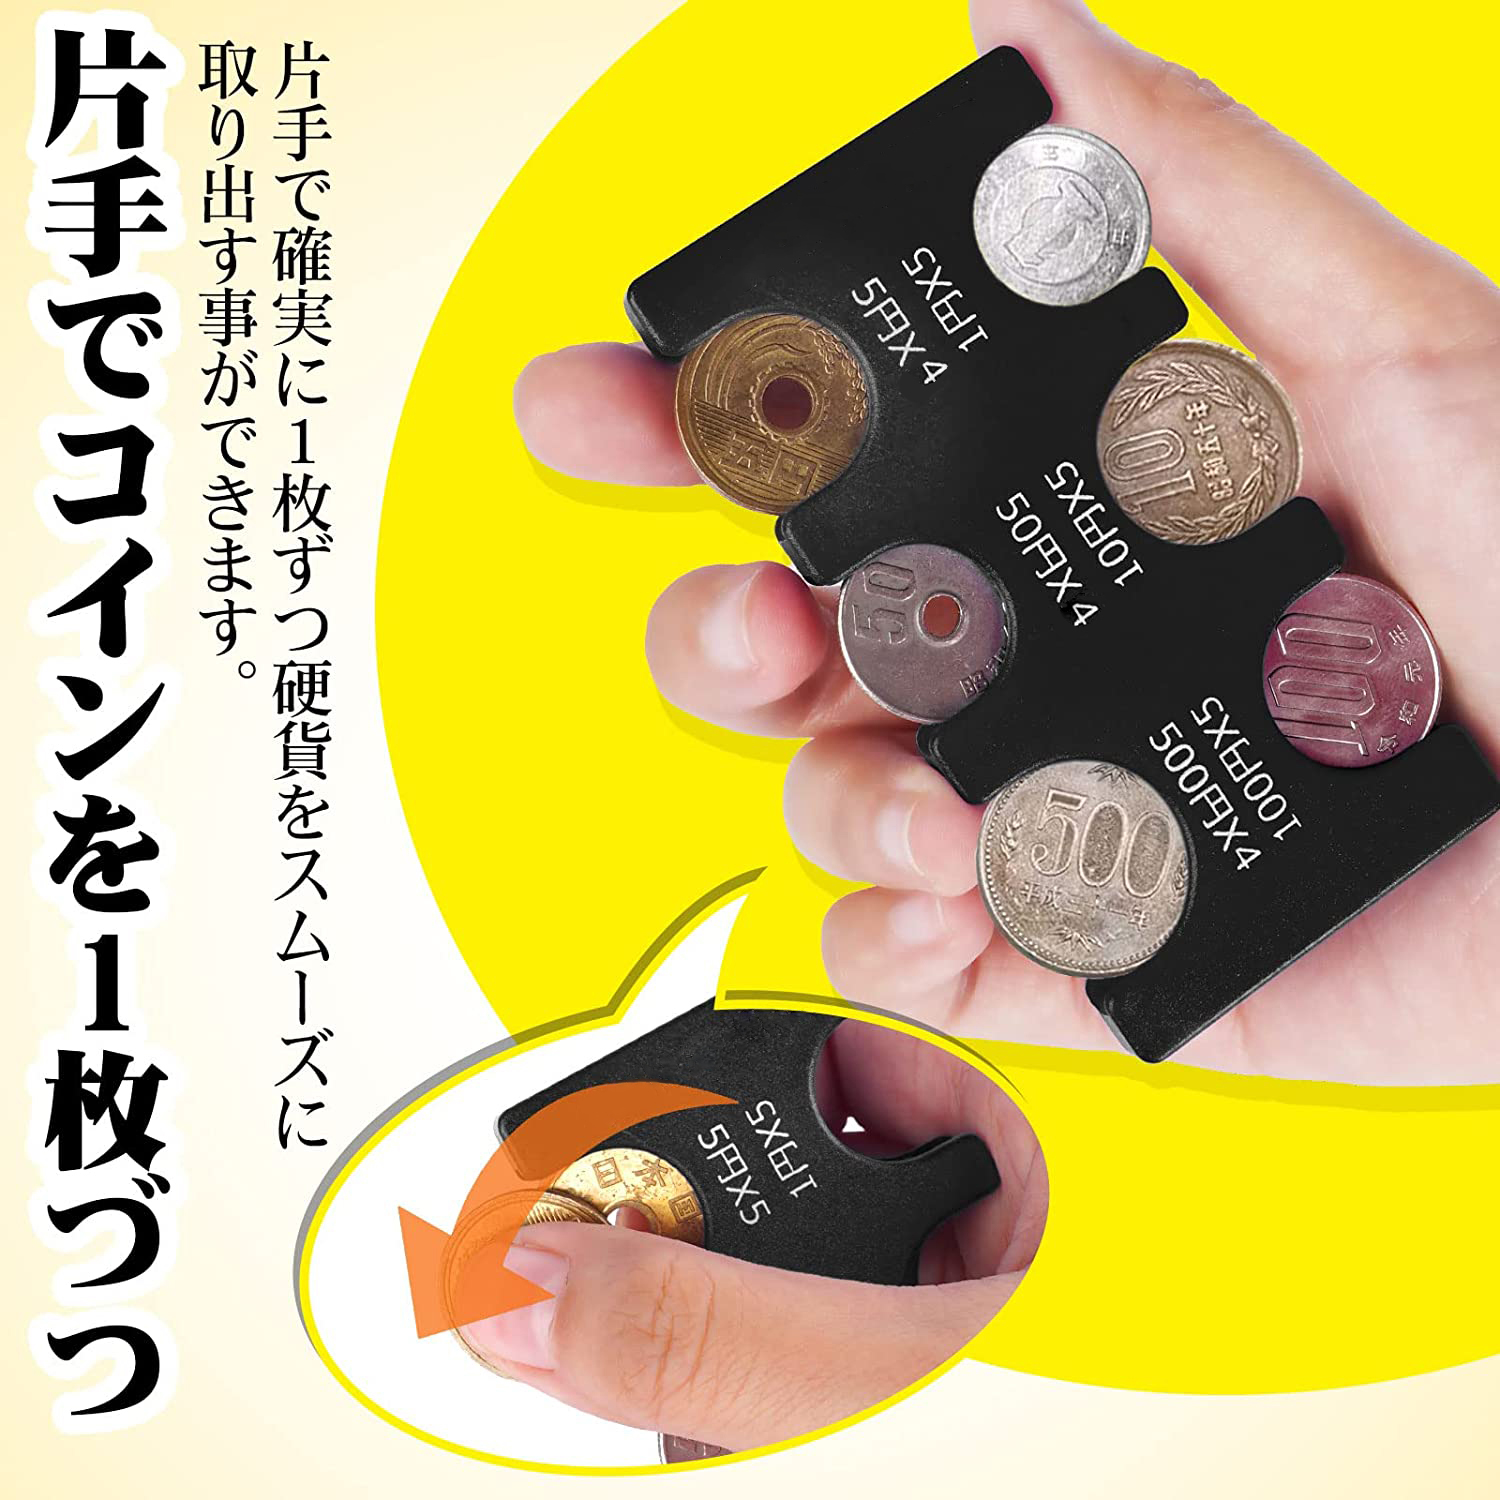 携帯コインホルダー カード型 コイン収納 小銭財布 硬貨収納 貨幣専用ケース